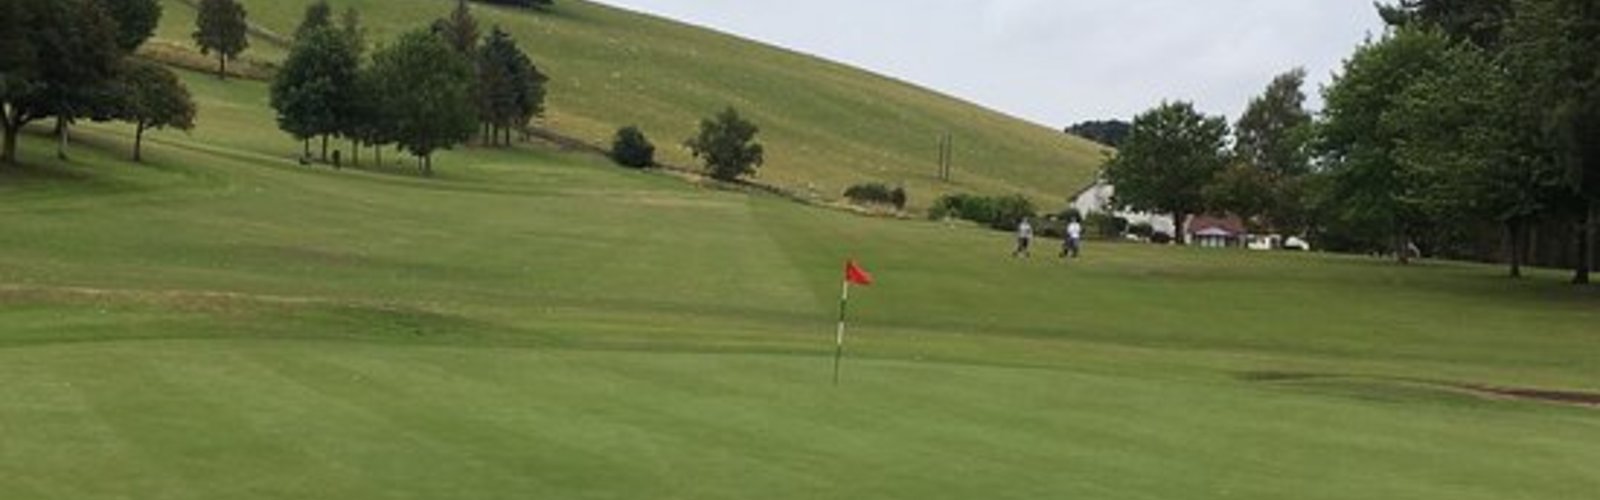 Cupar golf club 9th green